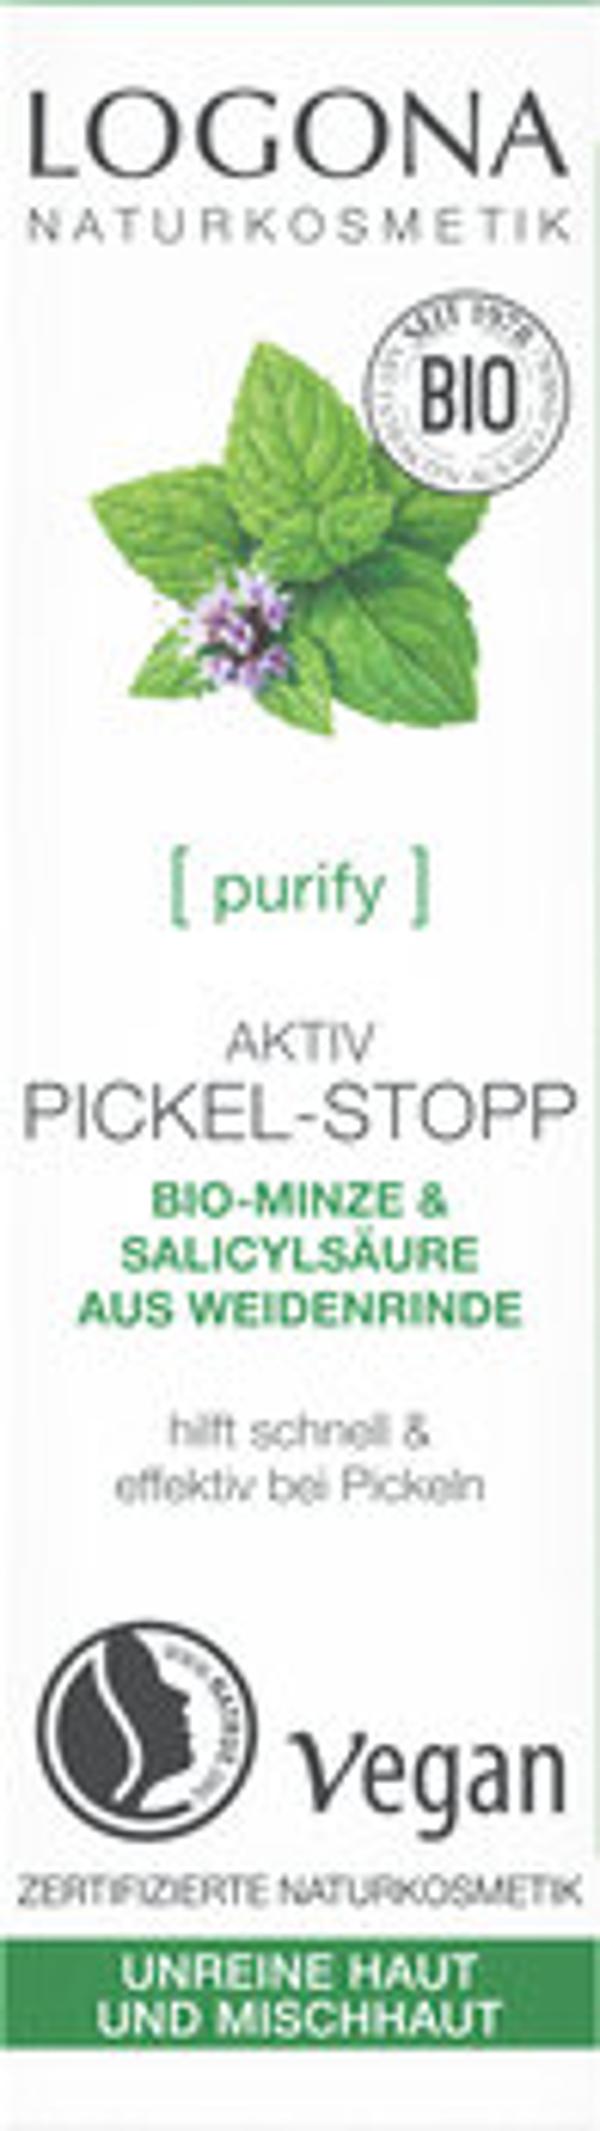 Produktfoto zu PURIFY Aktiv Pickel-Stopp 6ml